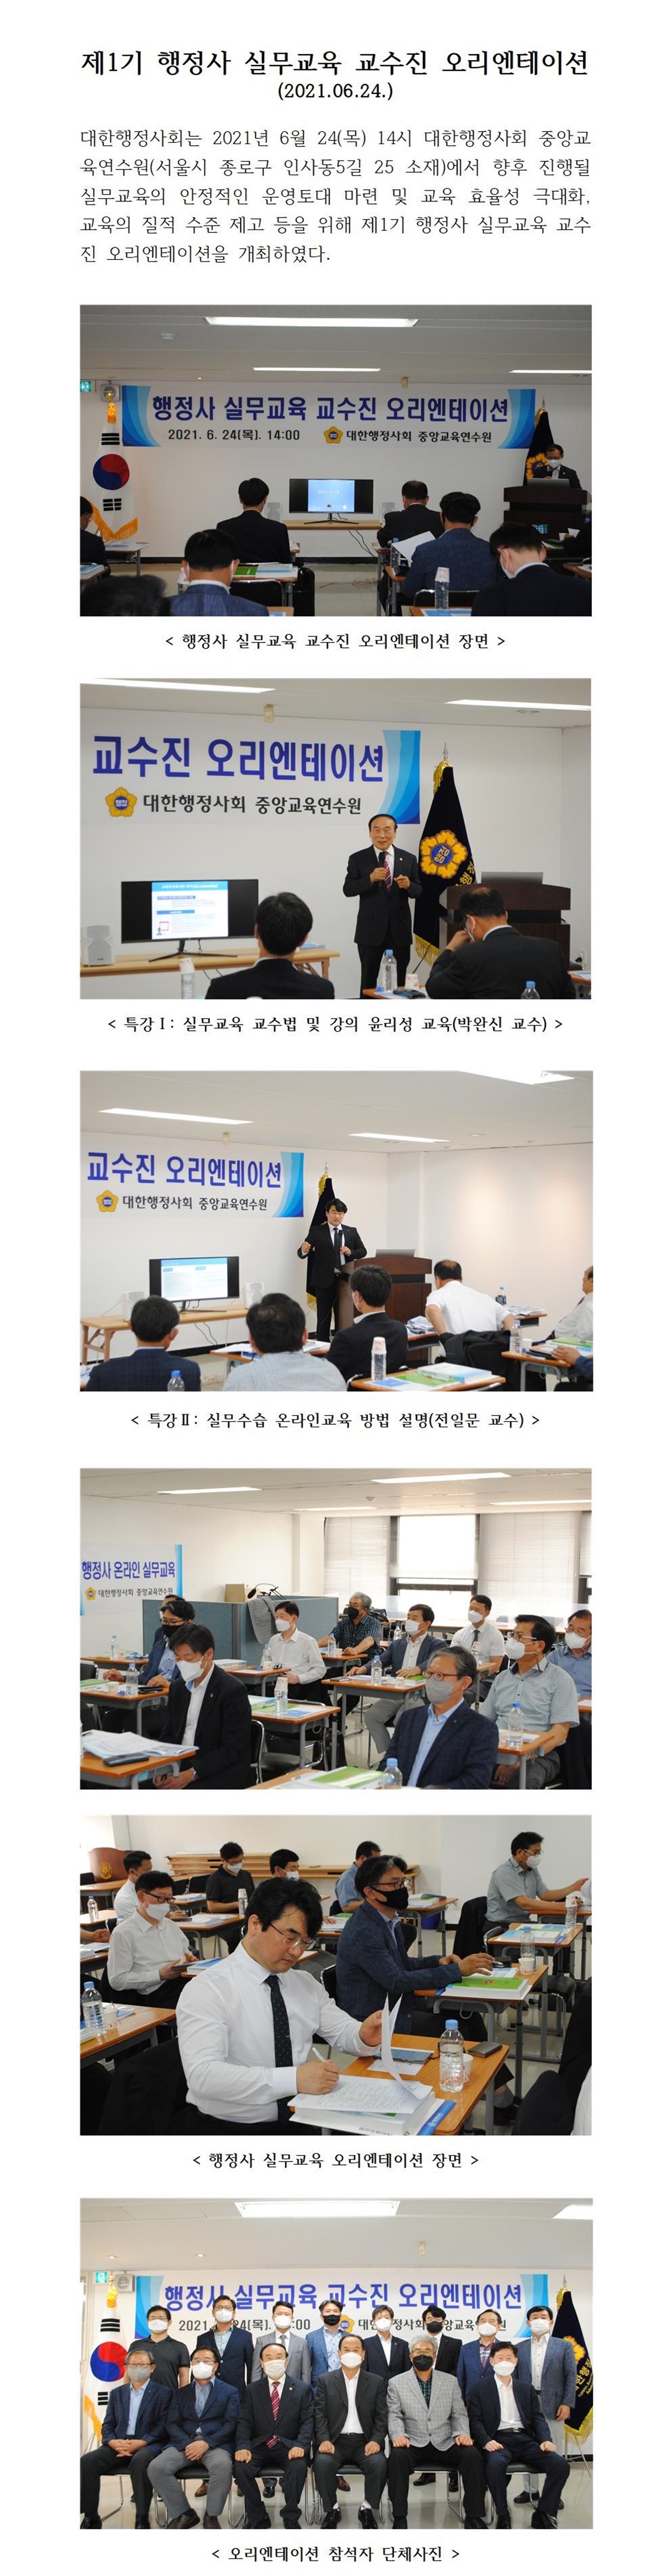 21.06.24 대한행정사회 제1기 행정사 실무교육 교수진 오리엔테이션 개최